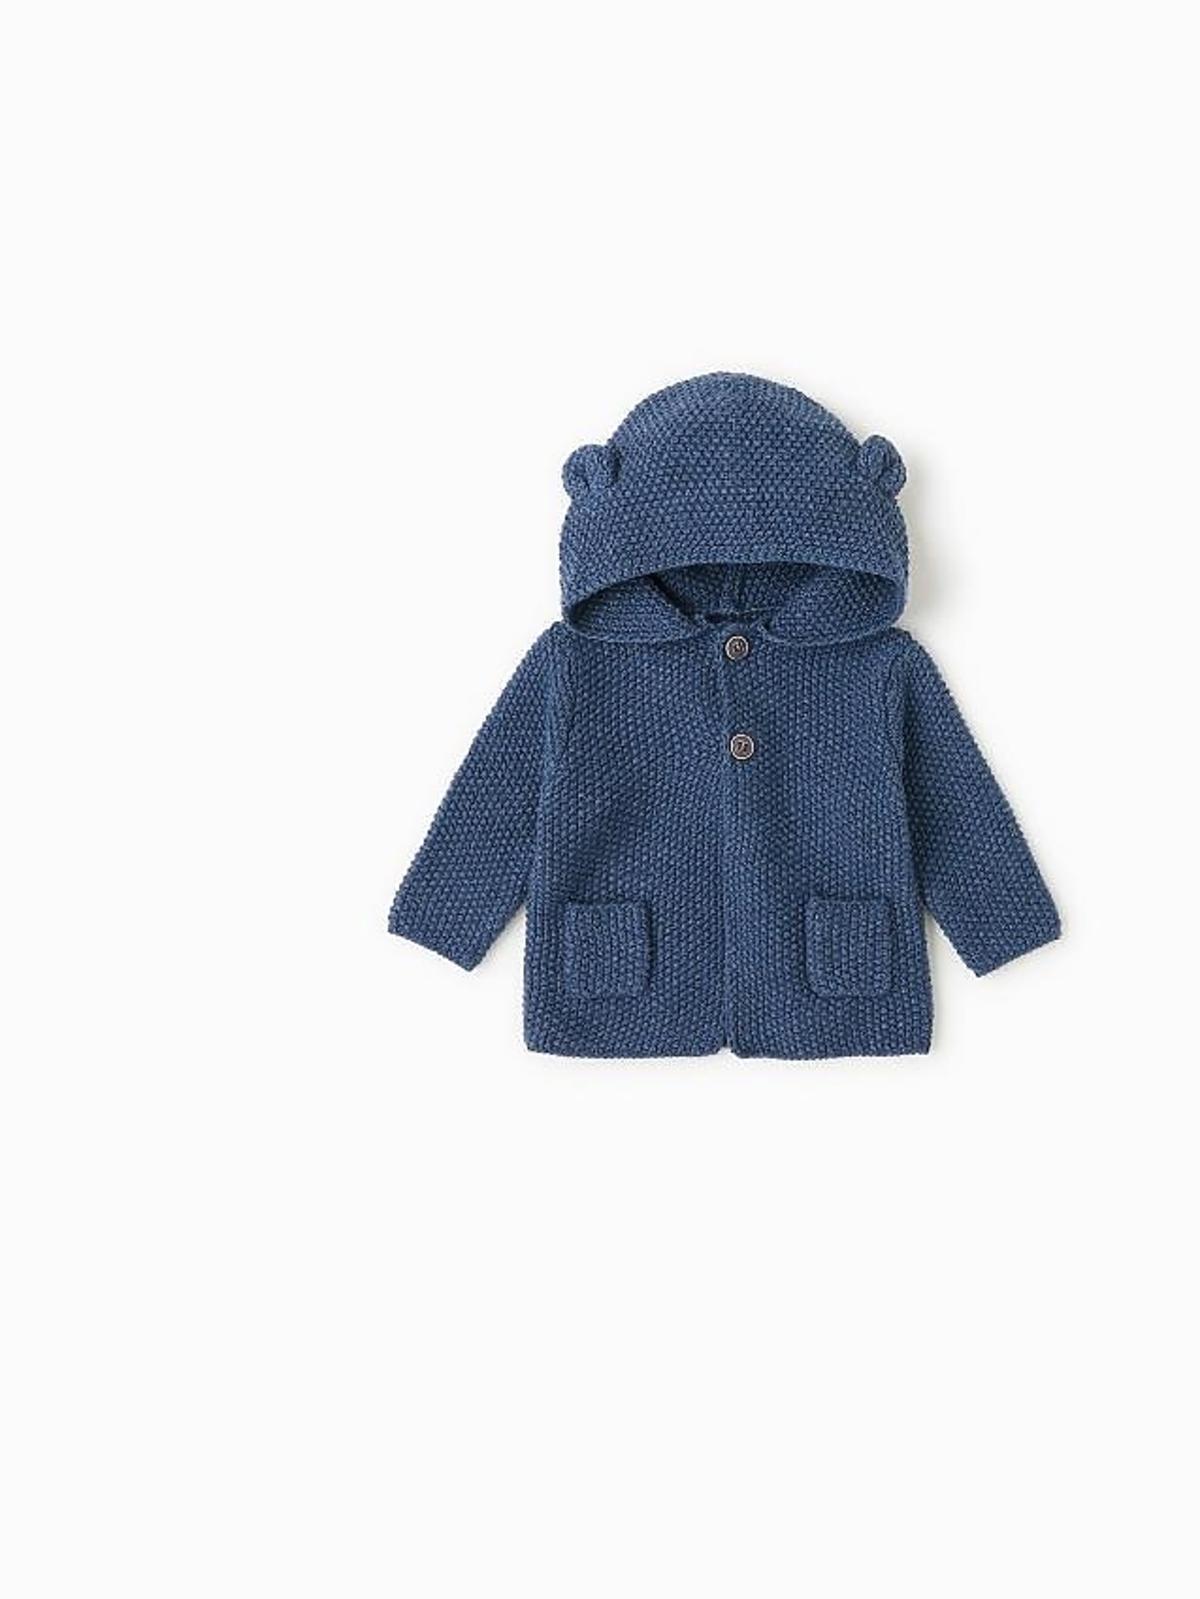 granatowy sweterek dla niemowlaka z uszkami na kapturze Zara